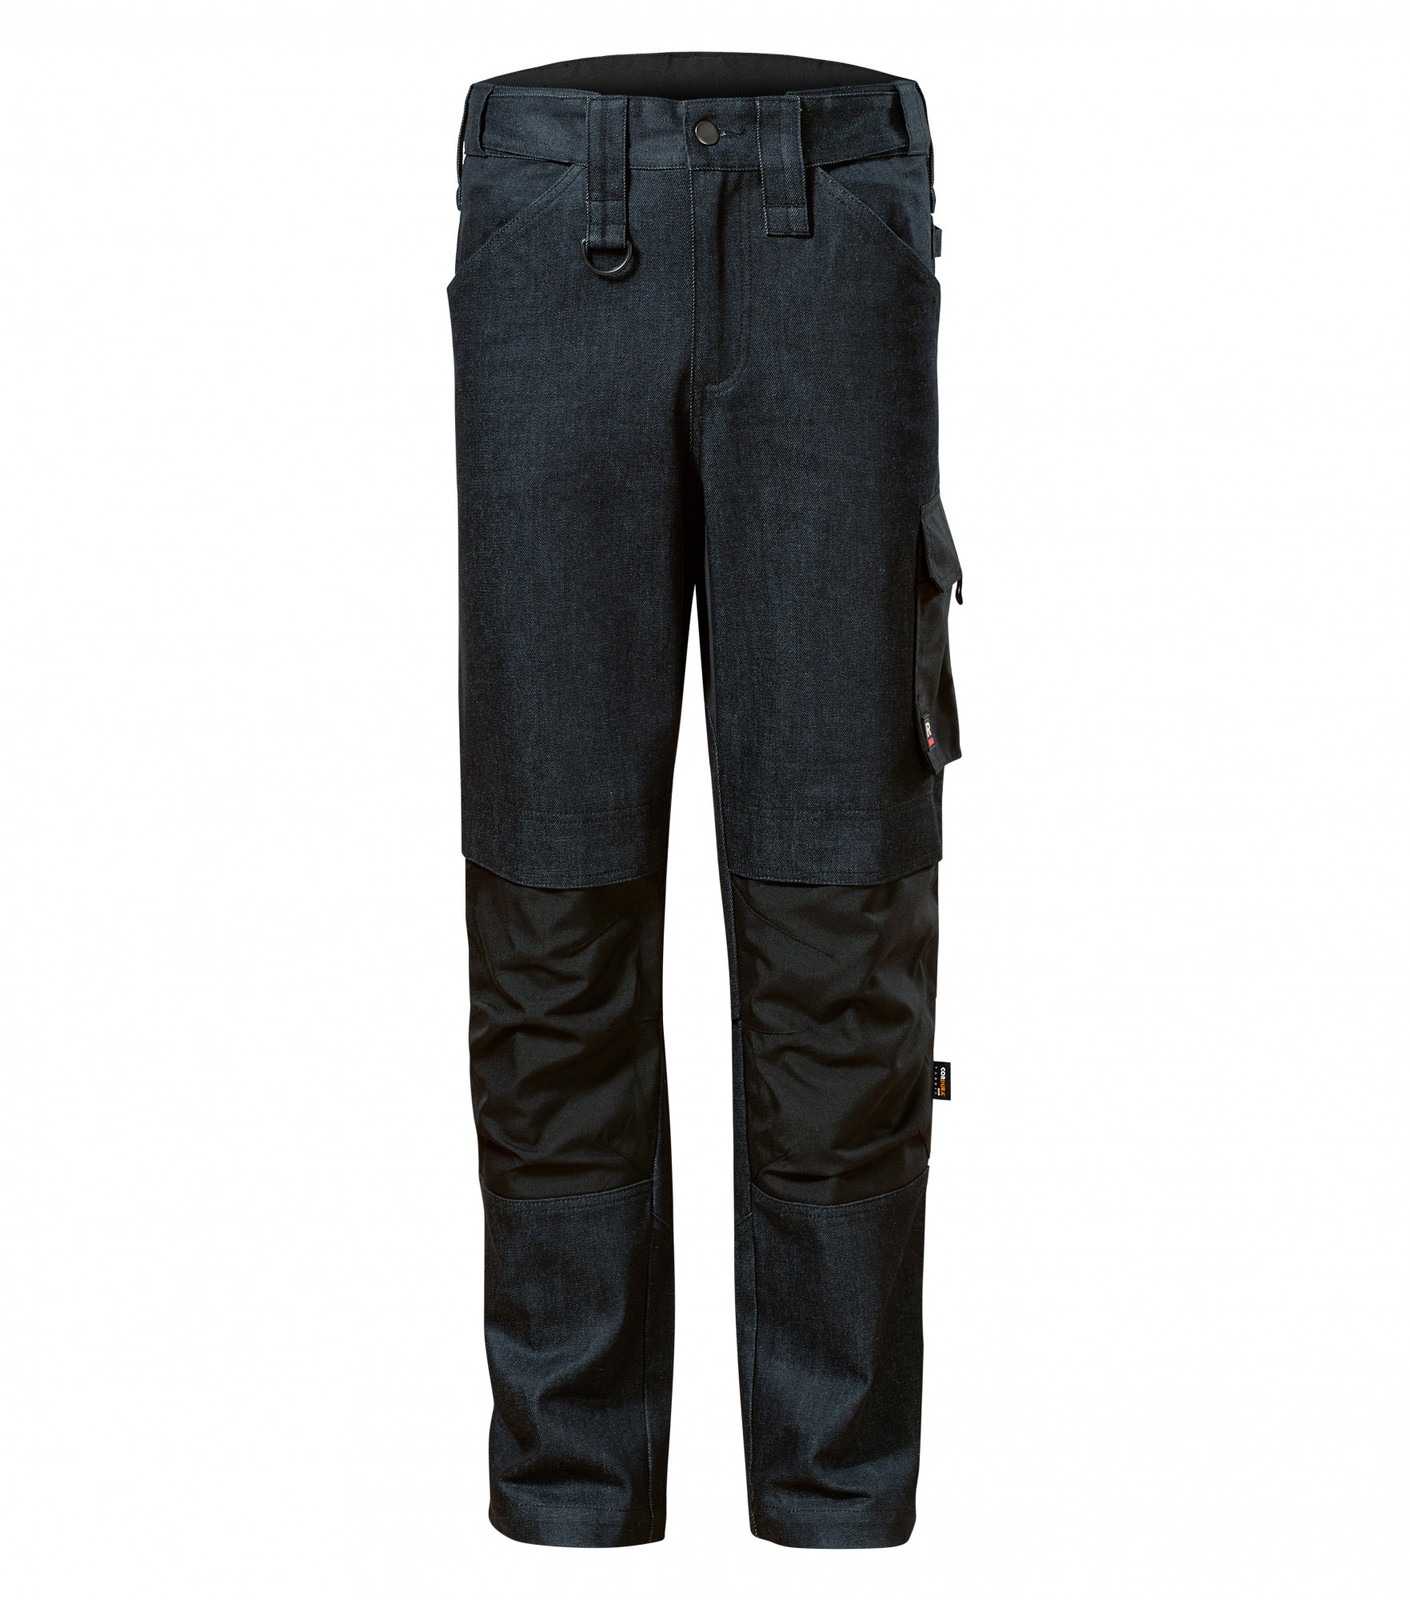 Pánske pracovné džínsy Rimeck Vertex W08 - veľkosť: 44, farba: tmavá navy